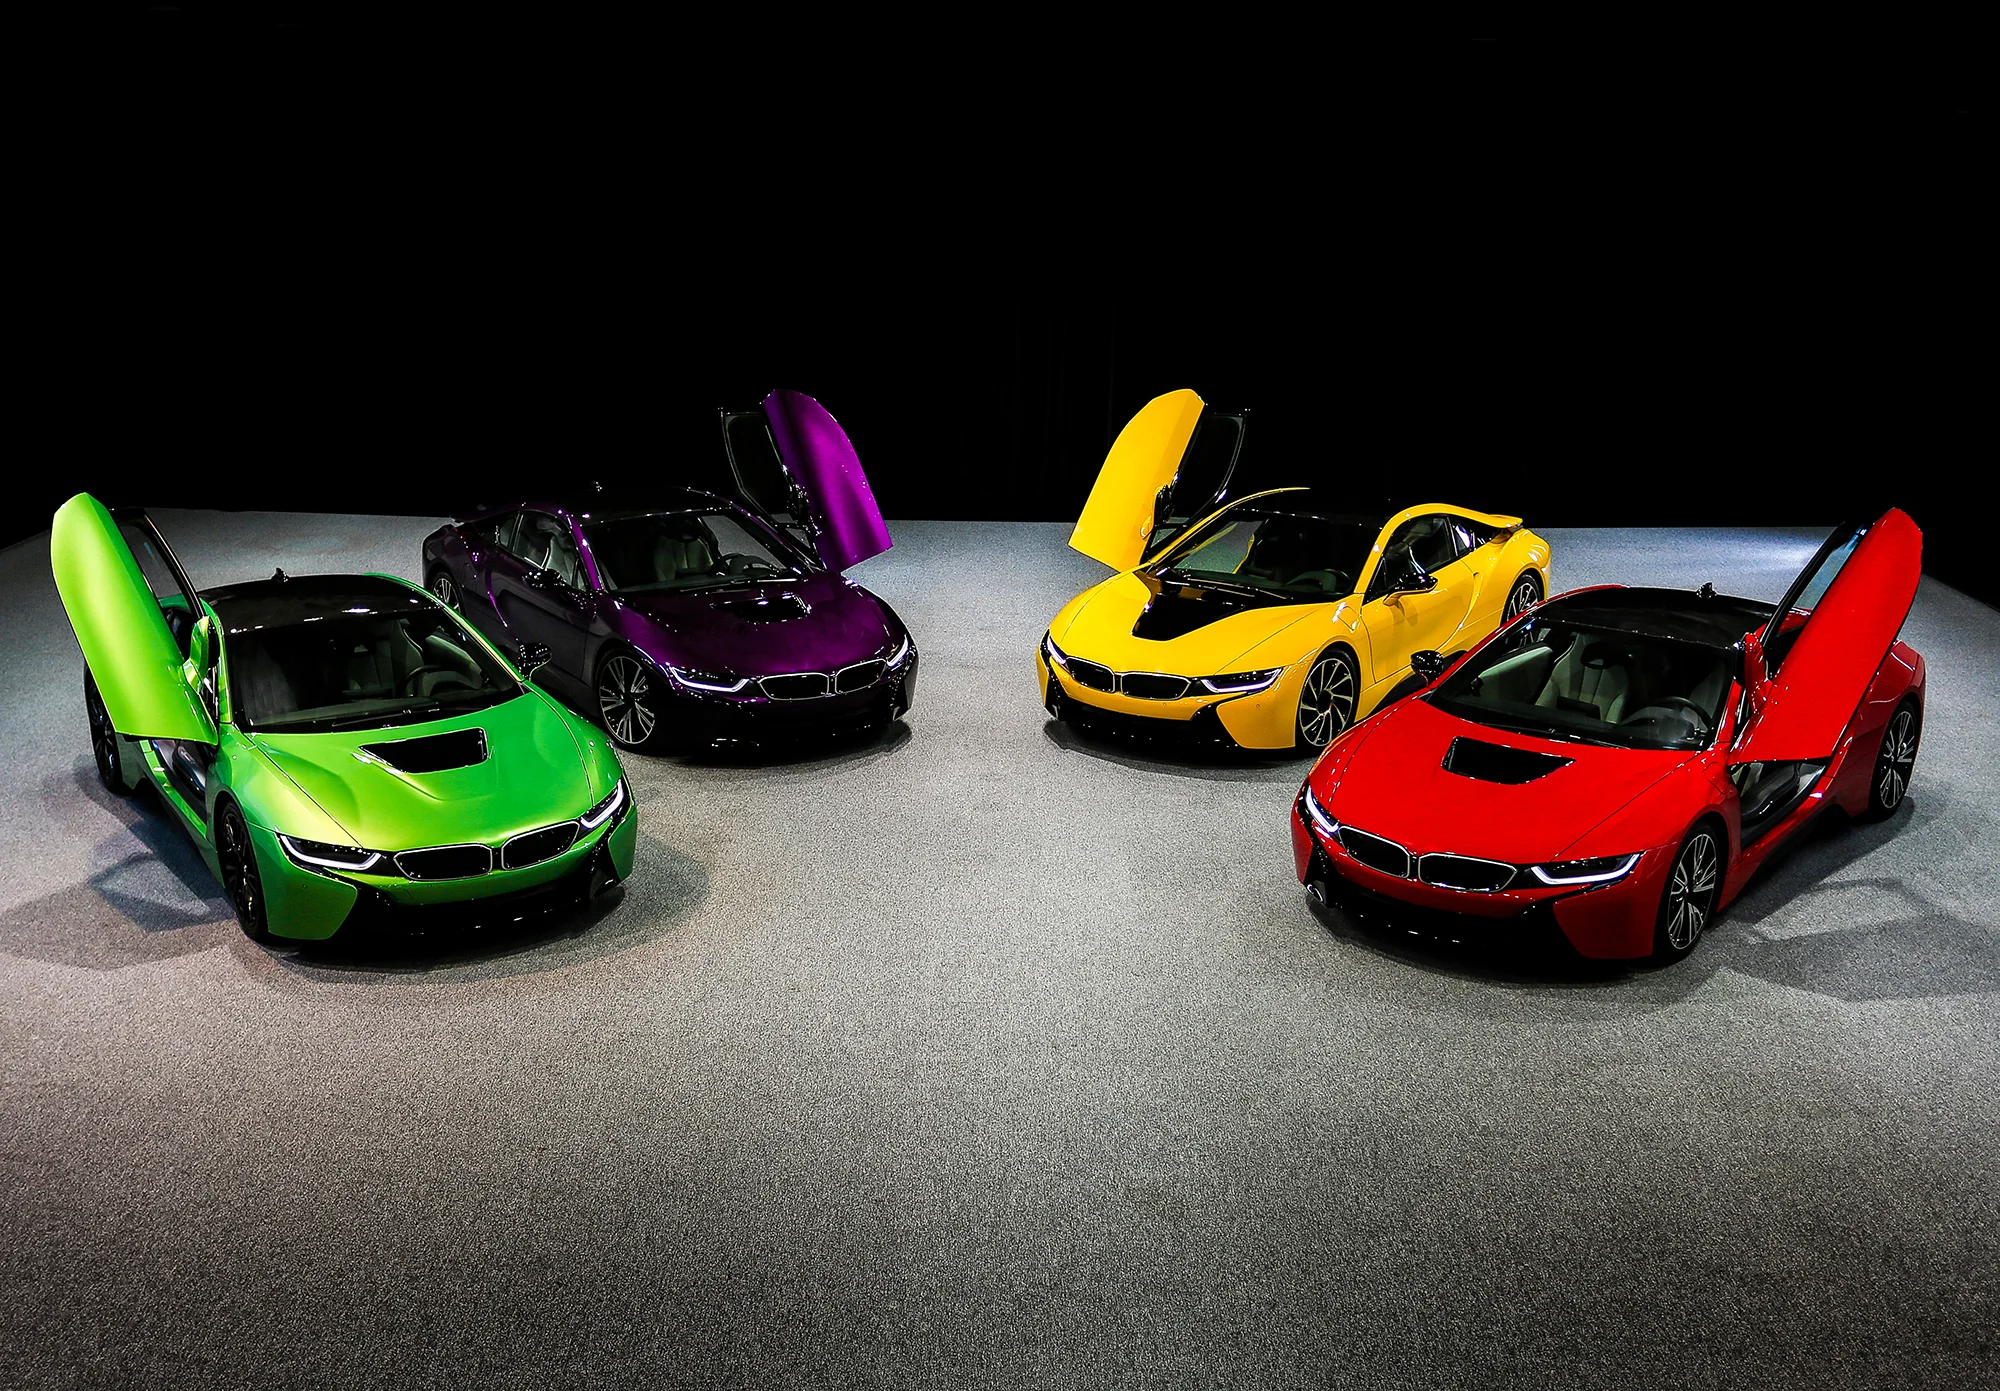 เลือกสีรถตามวันเกิด